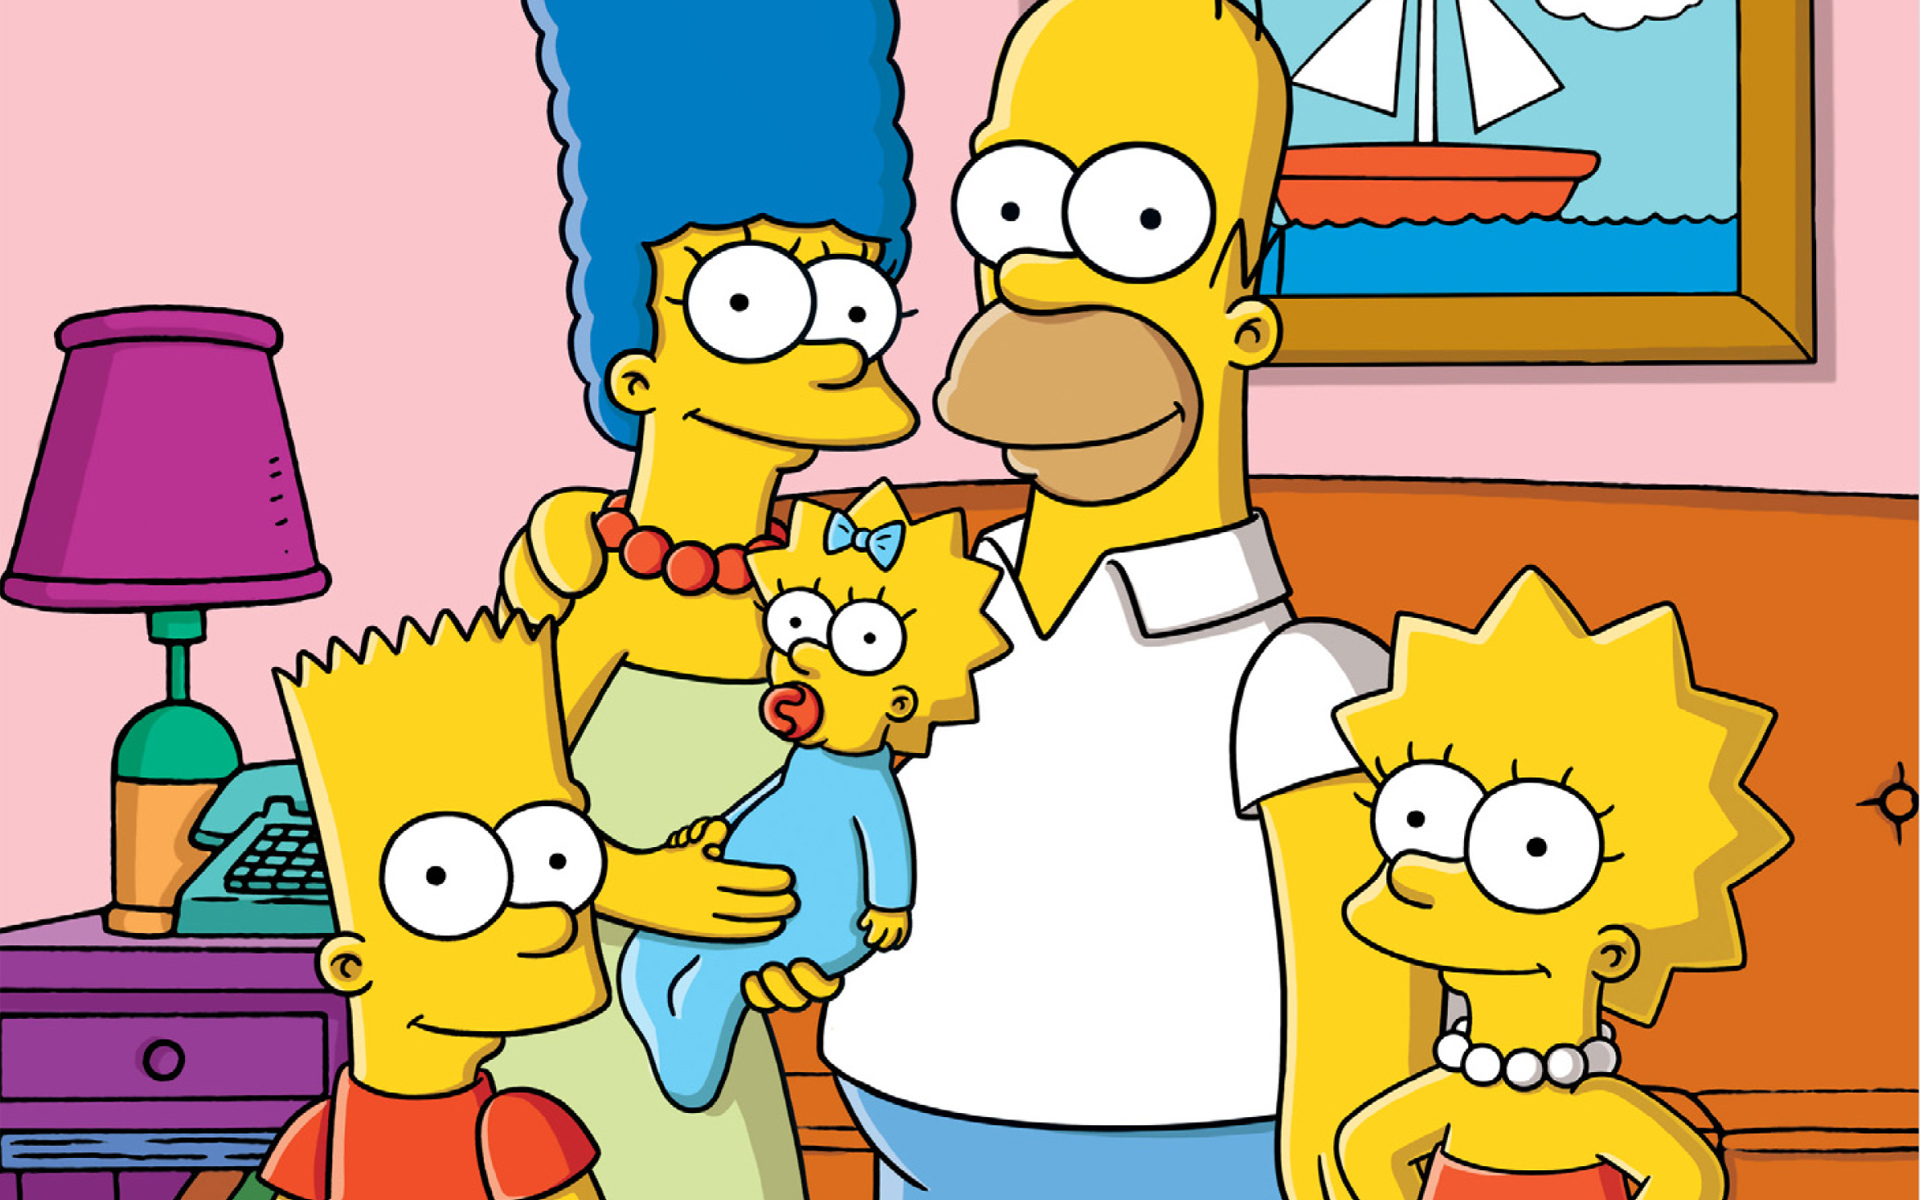 辛普森一家 第一季(The Simpsons Season 1) - 动漫图片 | 图片下载 | 动漫壁纸 - VeryCD电驴大全